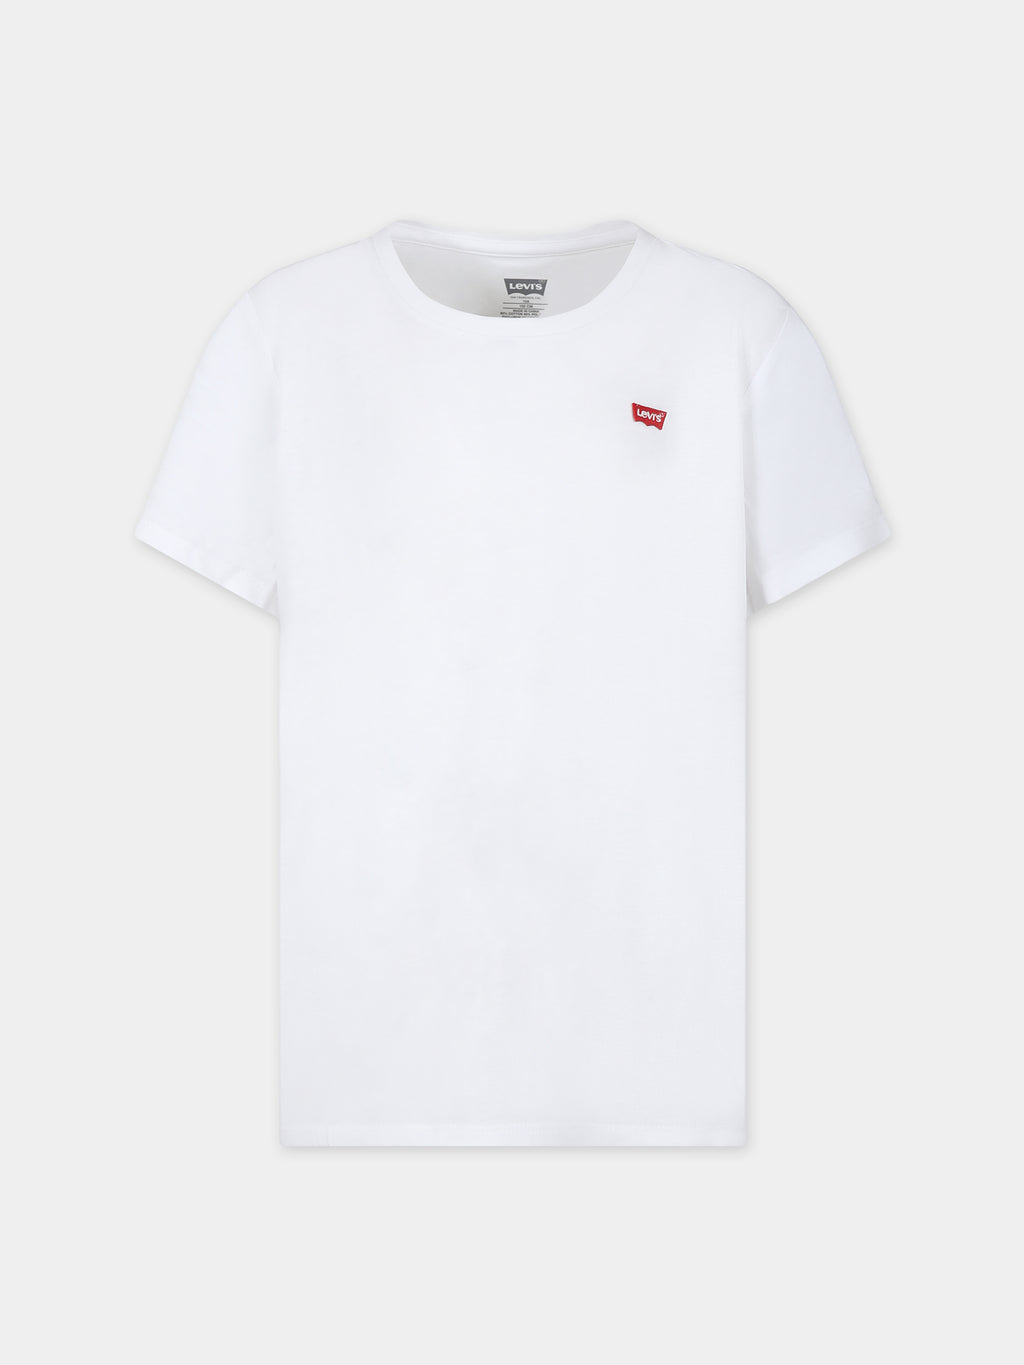 T-shirt bianca per bambini con logo